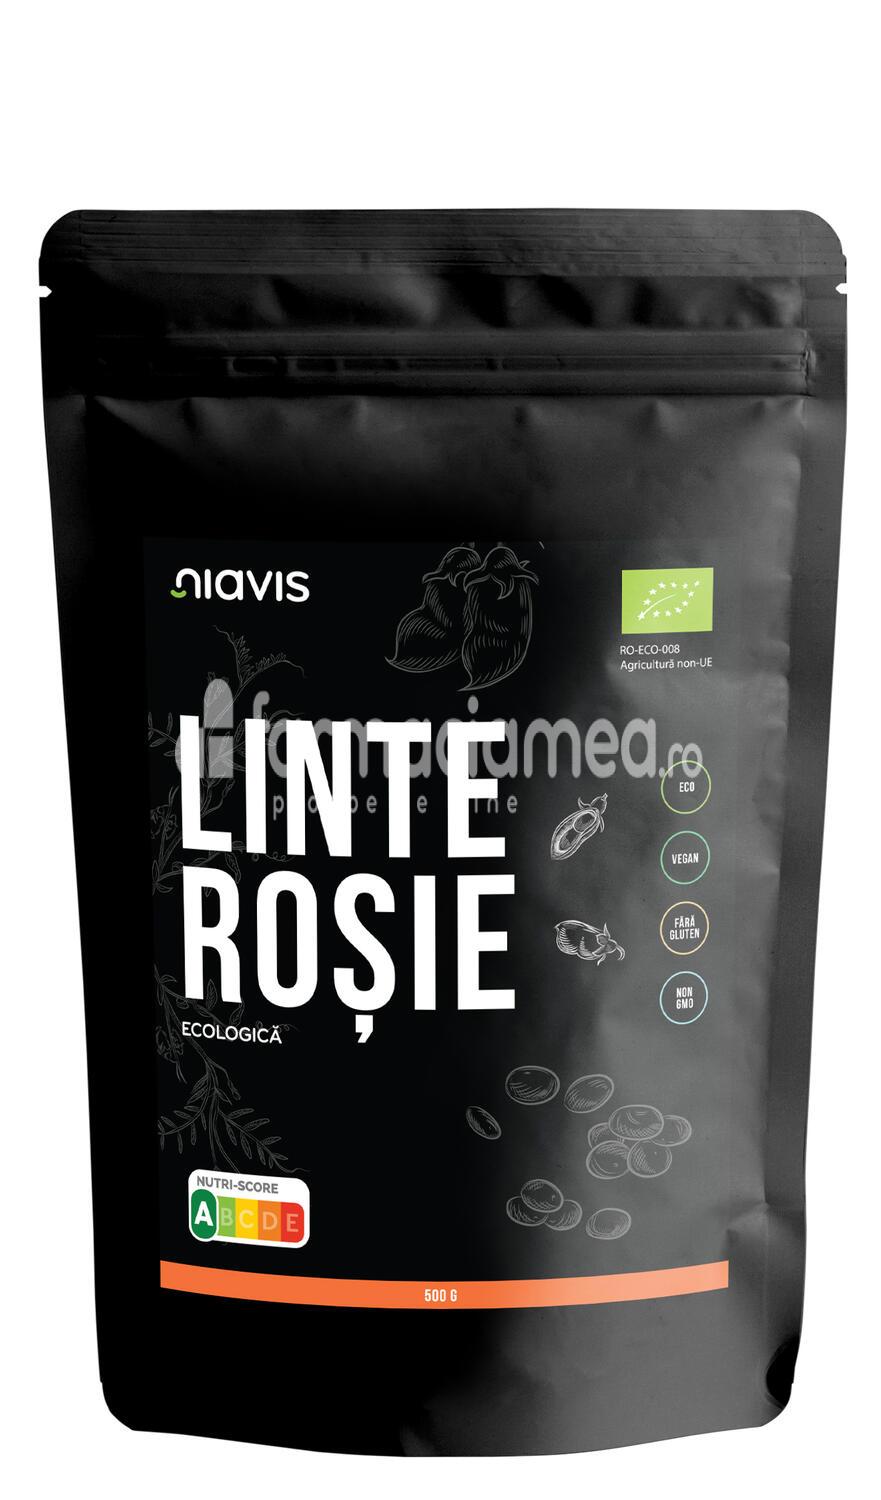 Alimente și băuturi - Niavis Linte rosie ecologica Bio, 500 g, farmaciamea.ro